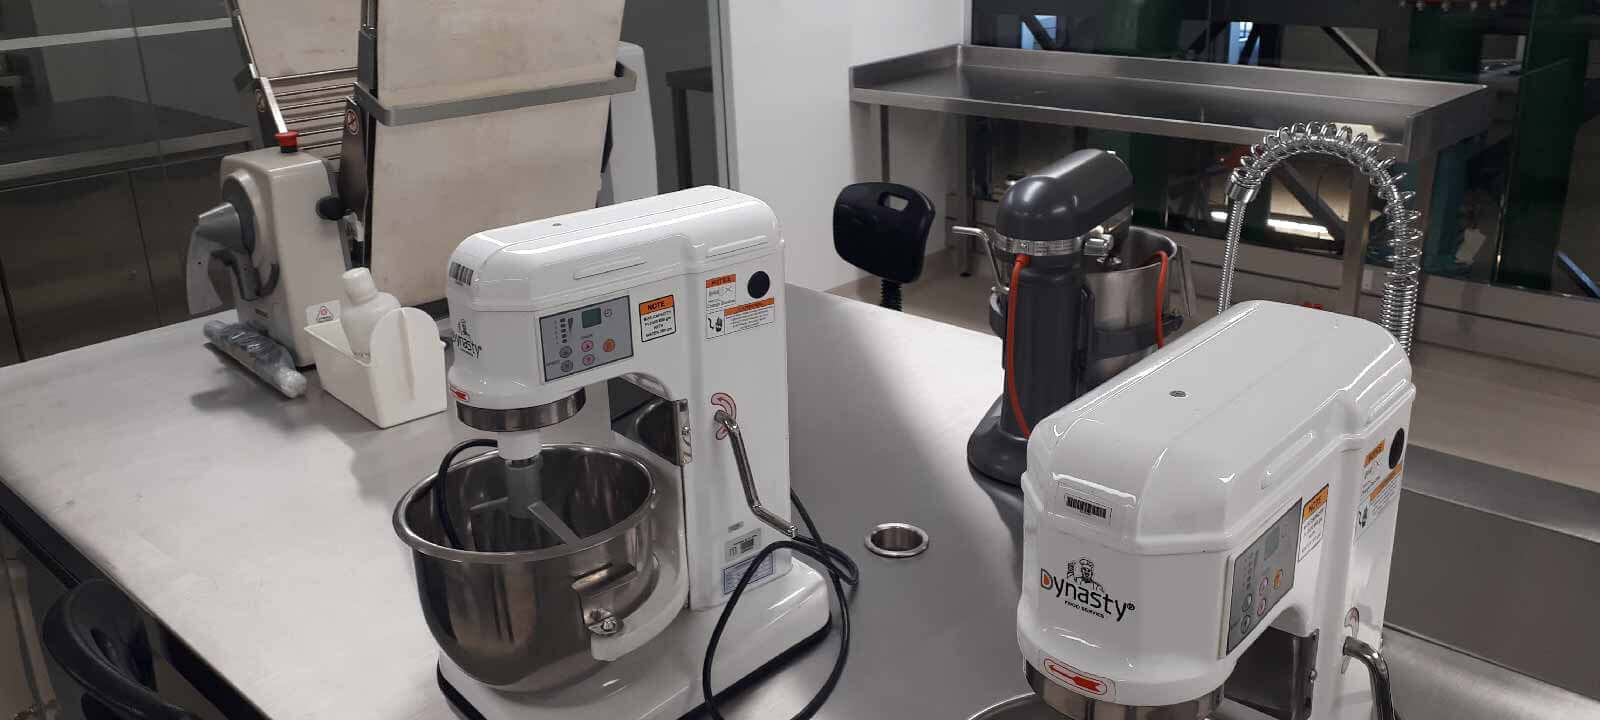 apertura laboratorio prototipado de alimentos laboratorio prototipado ingeniería química alimentos uniandes